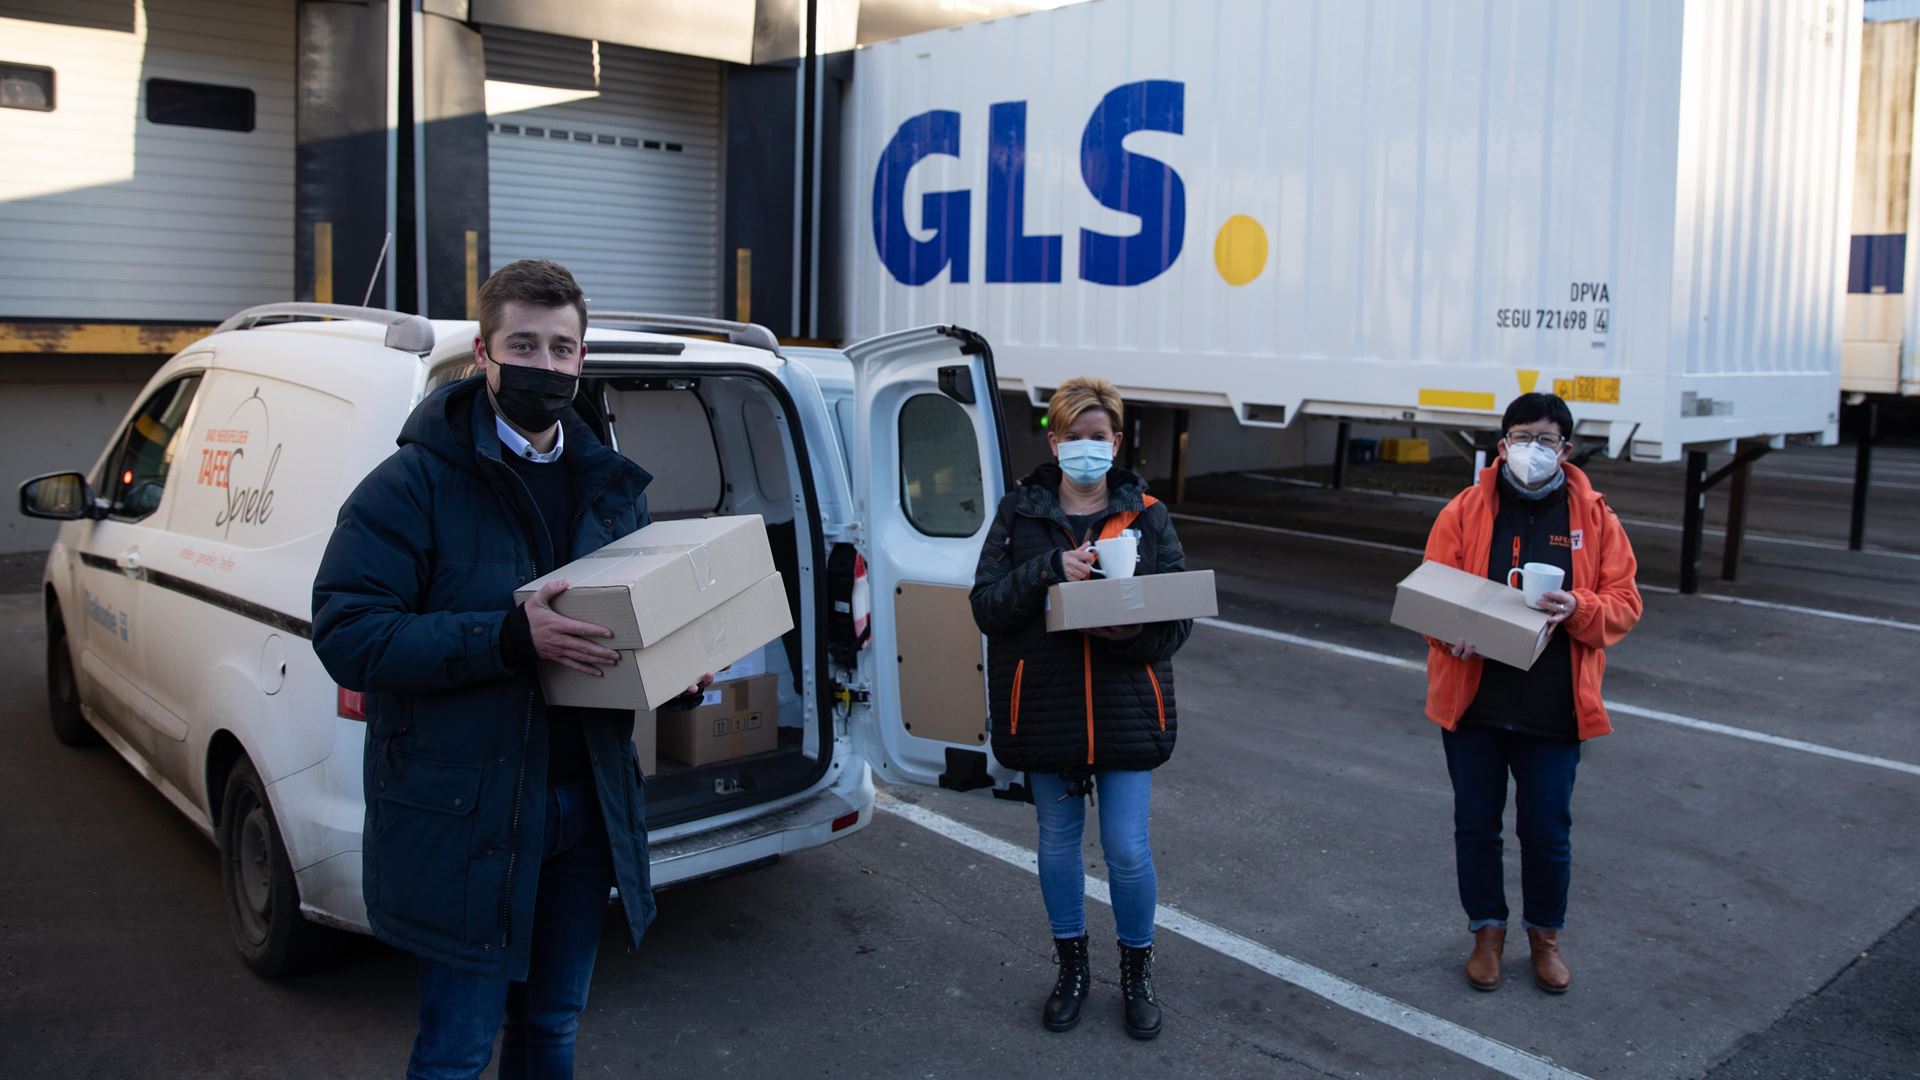 Heringsfilet und Schoko-Pudding: GLS Germany unterstützt lokale Spendenaktionen zu Weihnachten